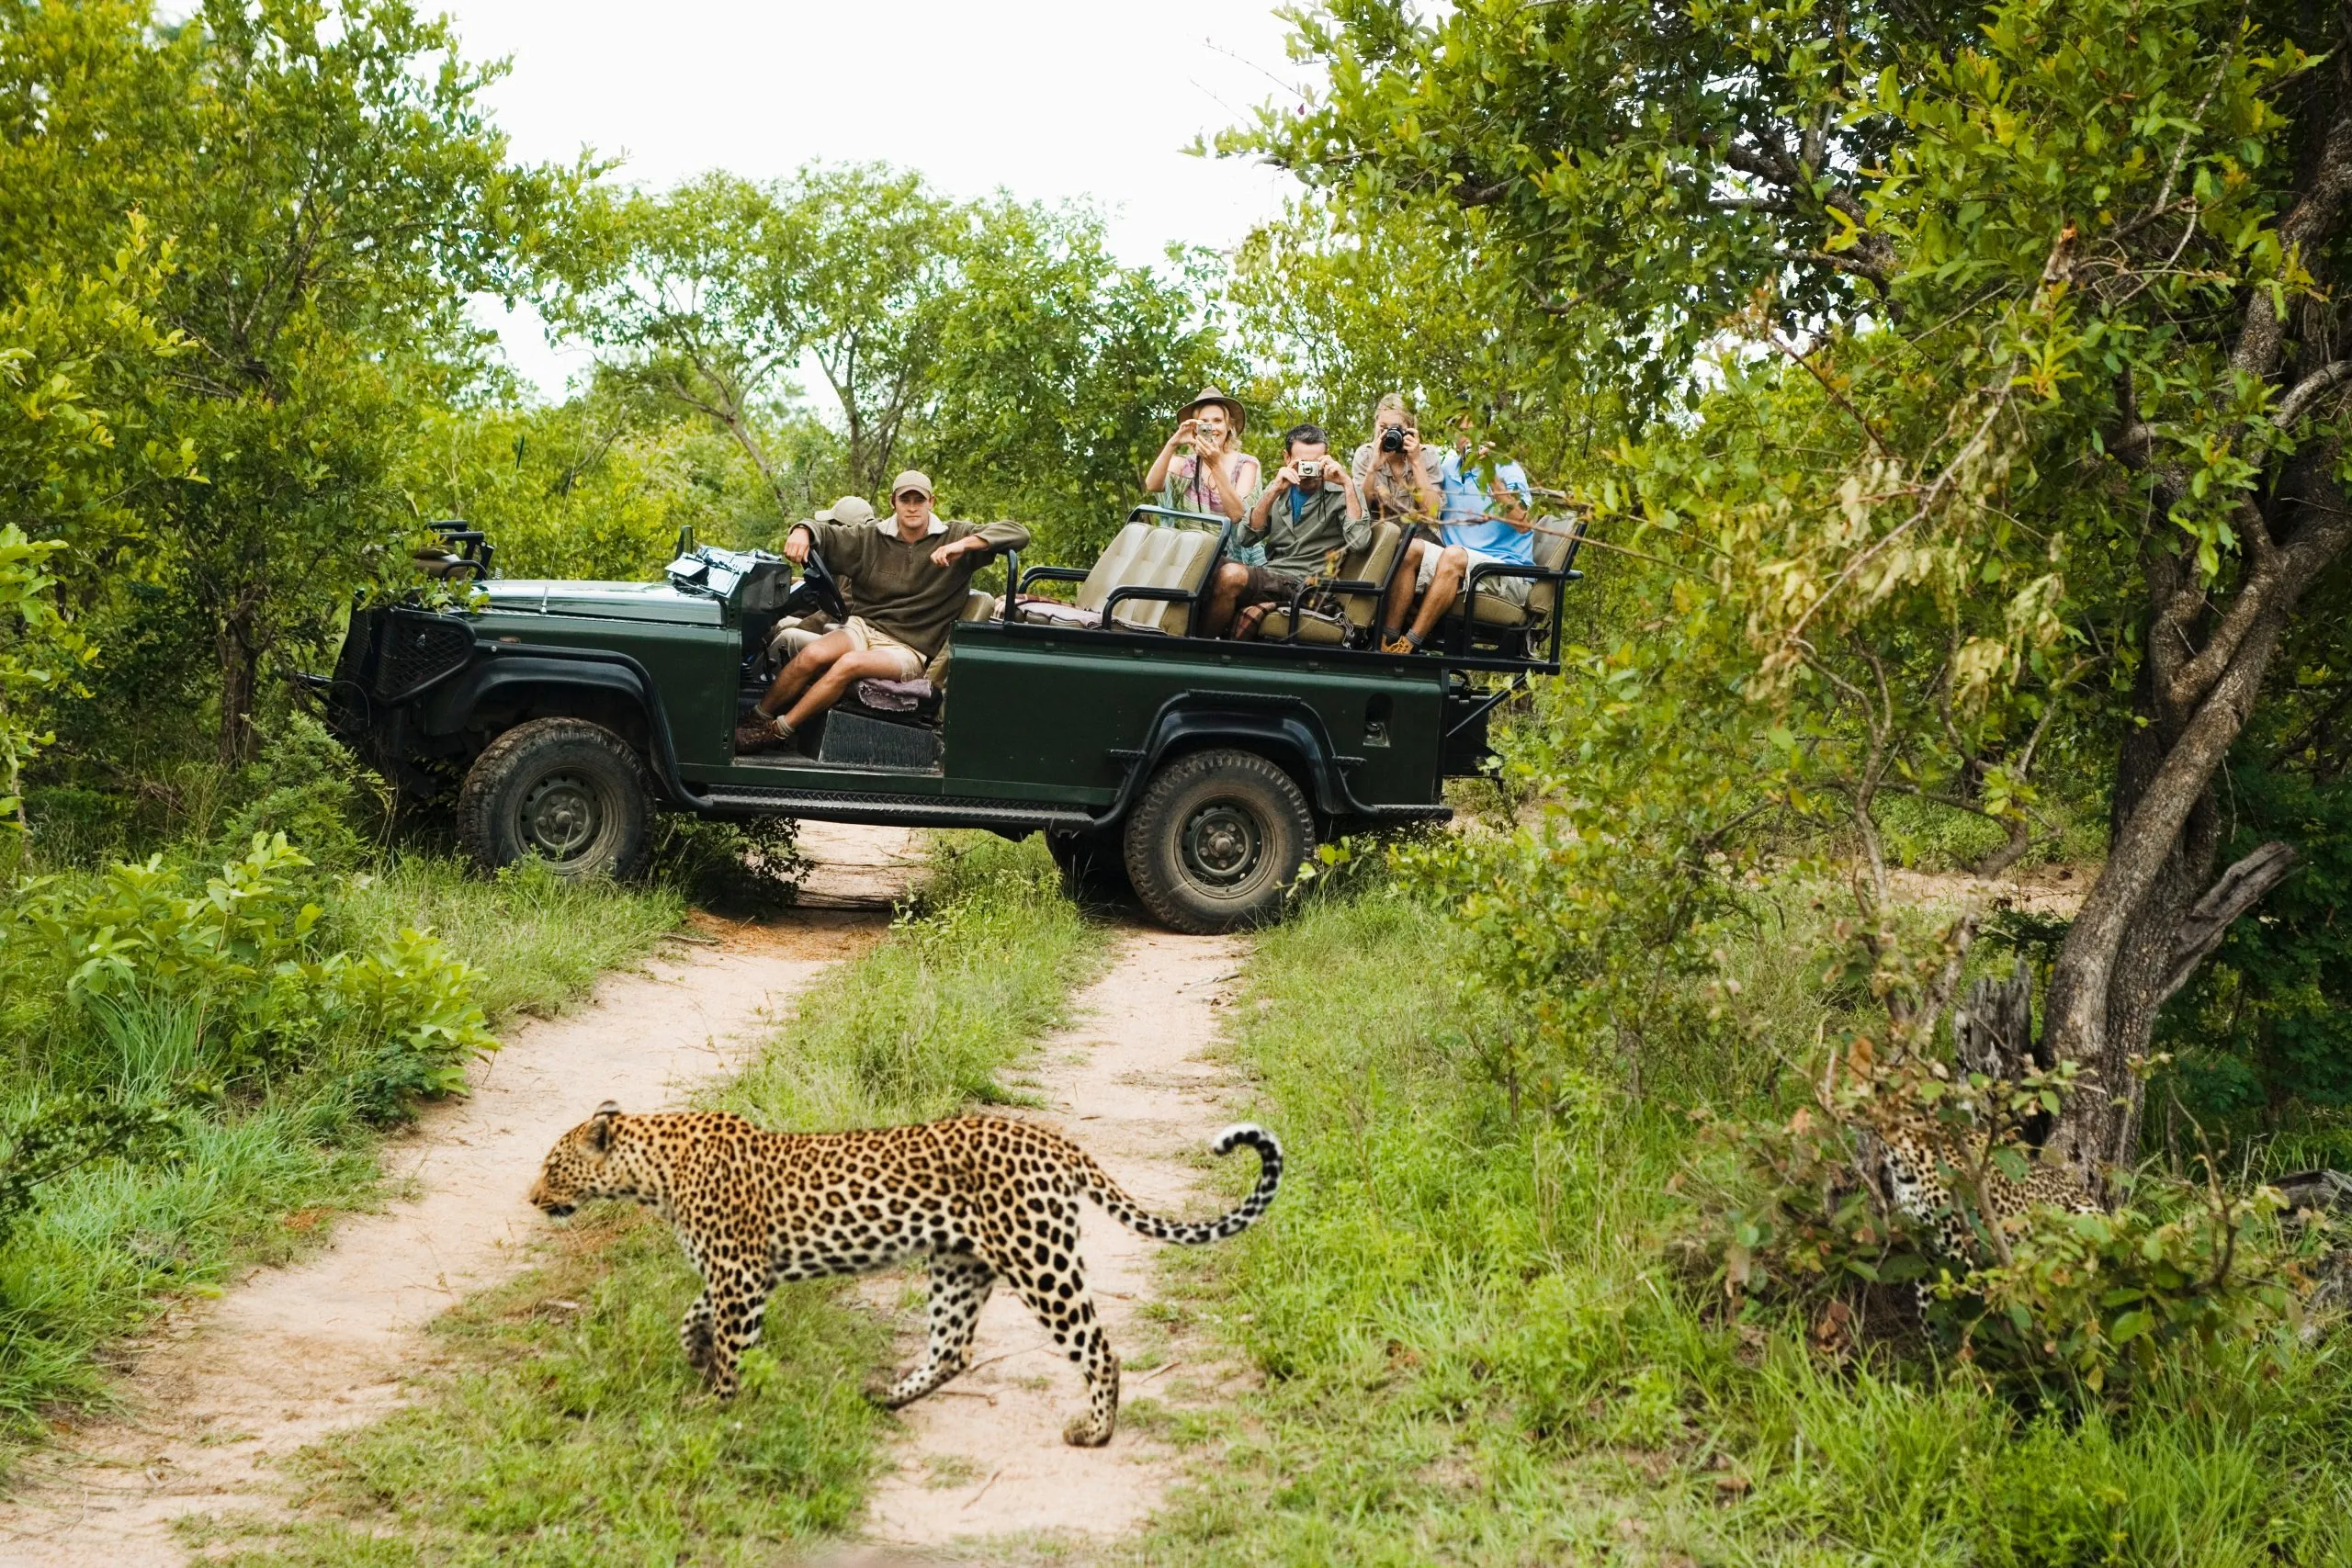 Leopardi ylittää tien turistien kanssa taustalla